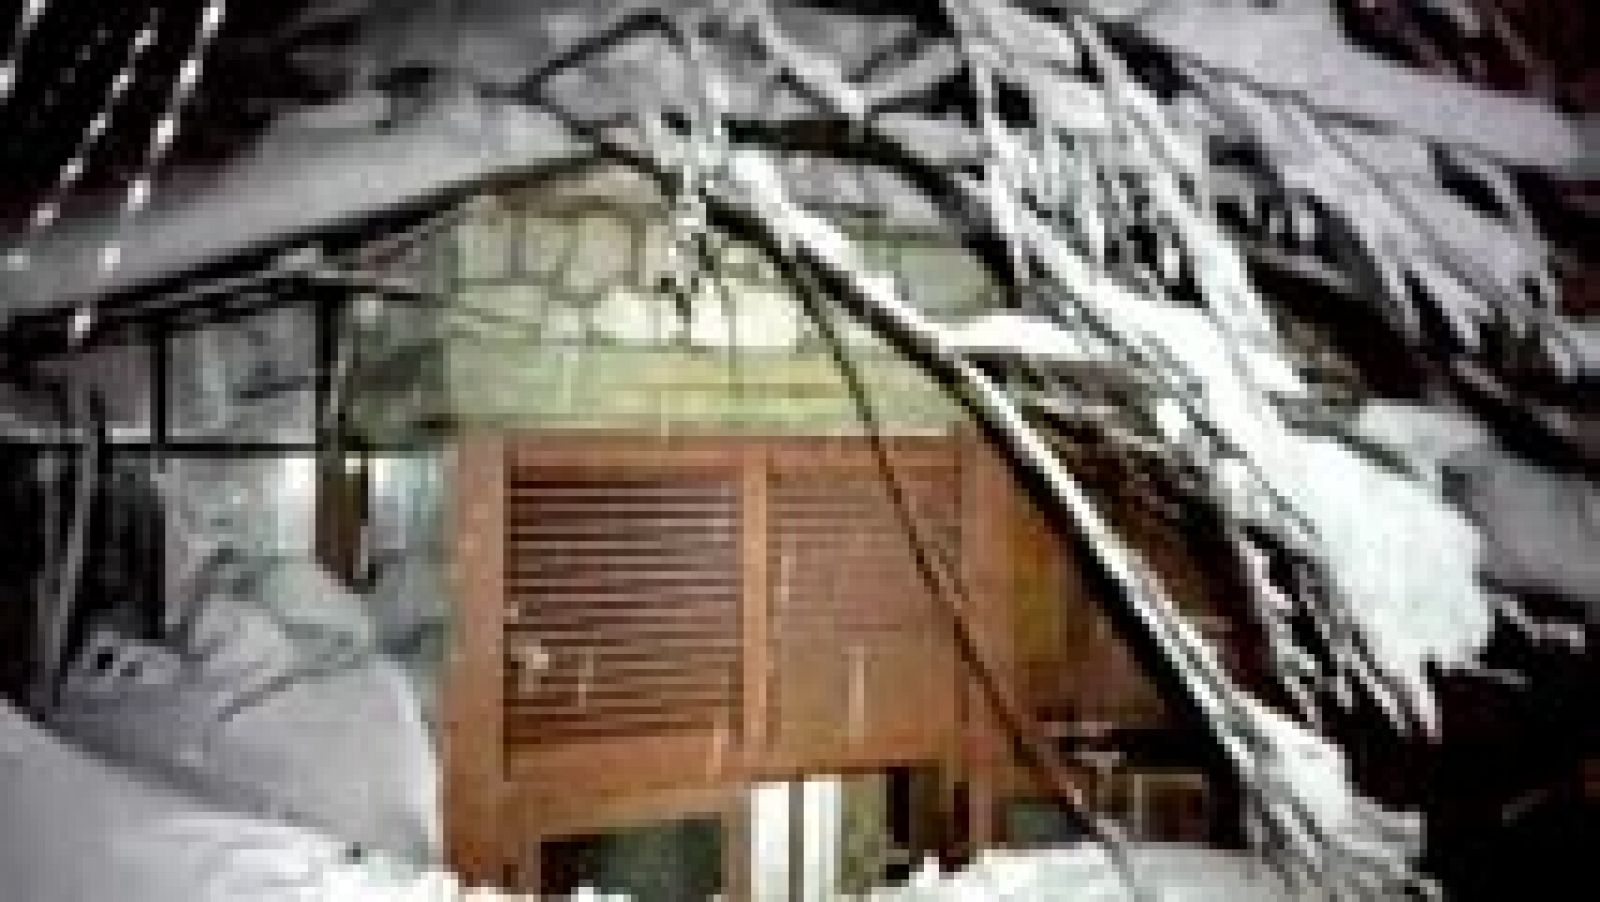 Terremoto en Italia - Imágenes del interior del hotel sepultado por la nieve